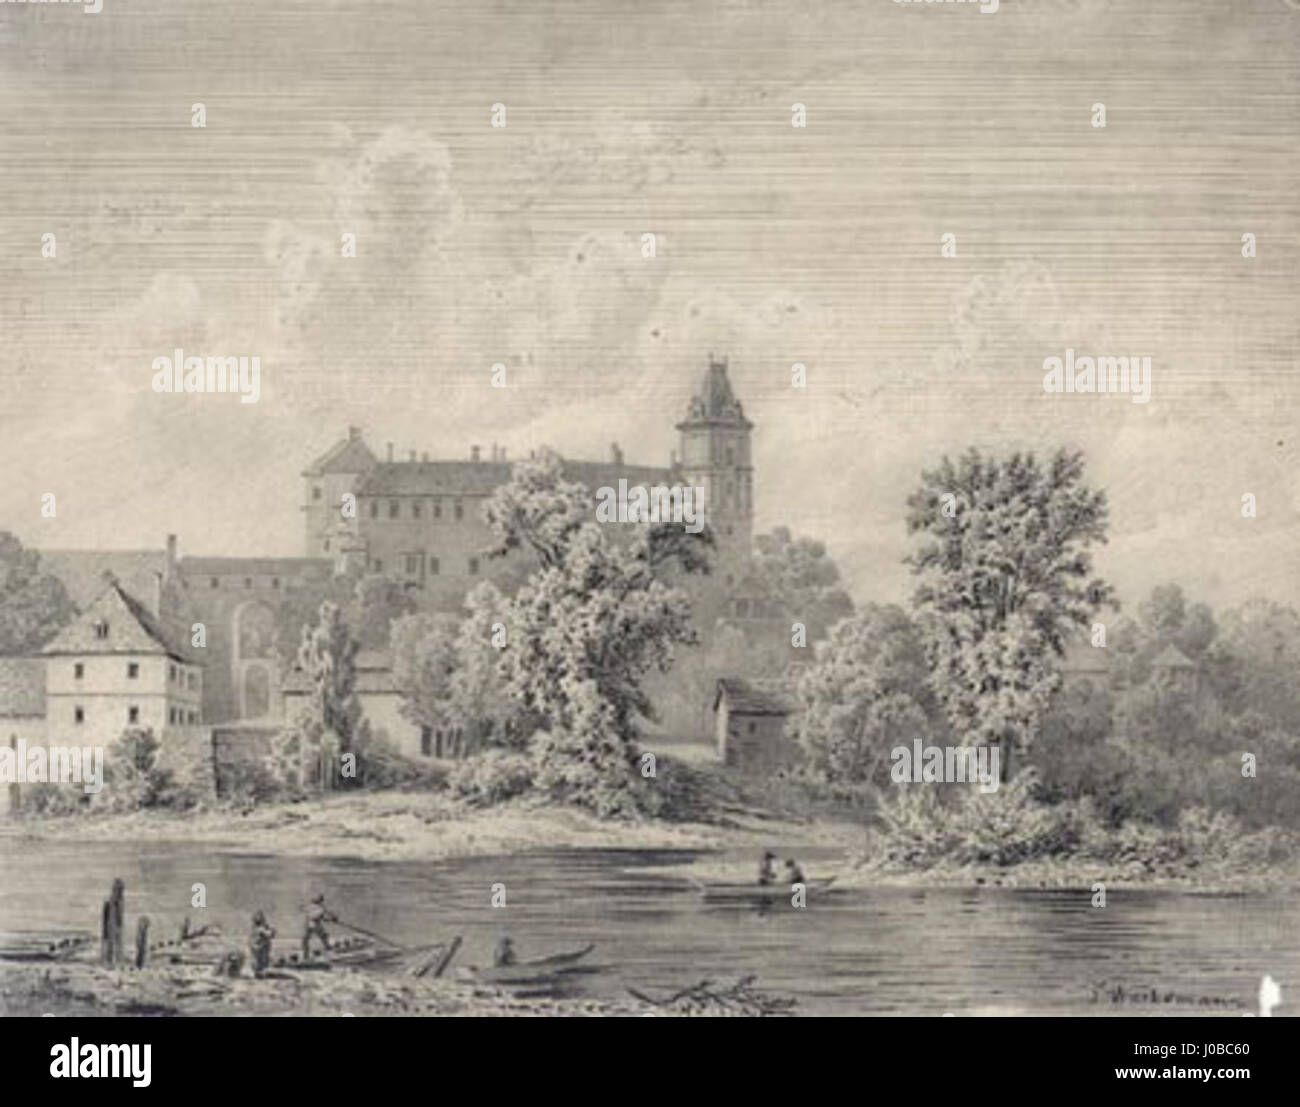 Bedřich Wachsmann - Kresba tuší na rastrovém papíře doplněná tužkou a Stock  Photo - Alamy